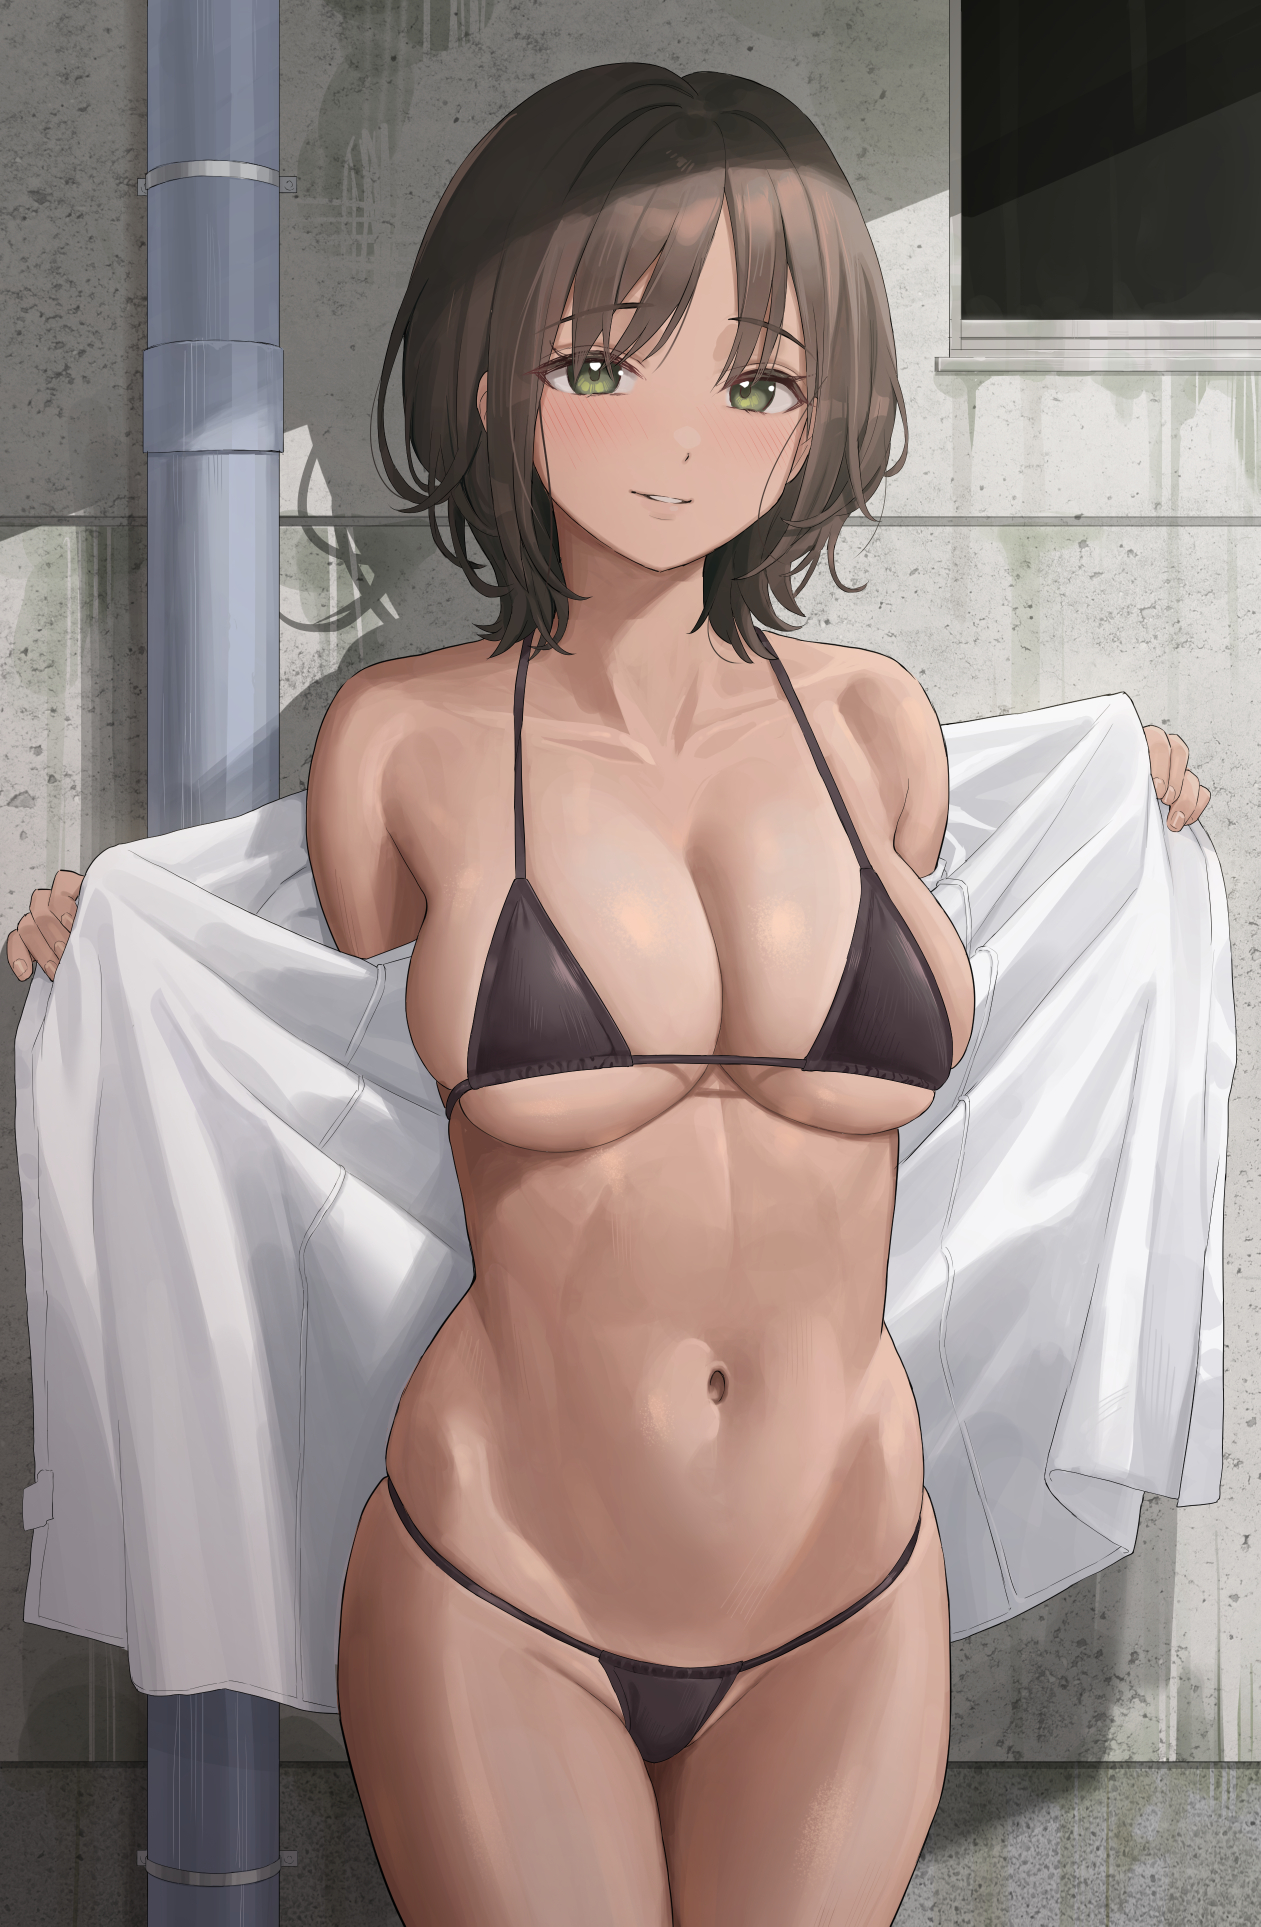 dilasha rana share anime bikini big boobs photos